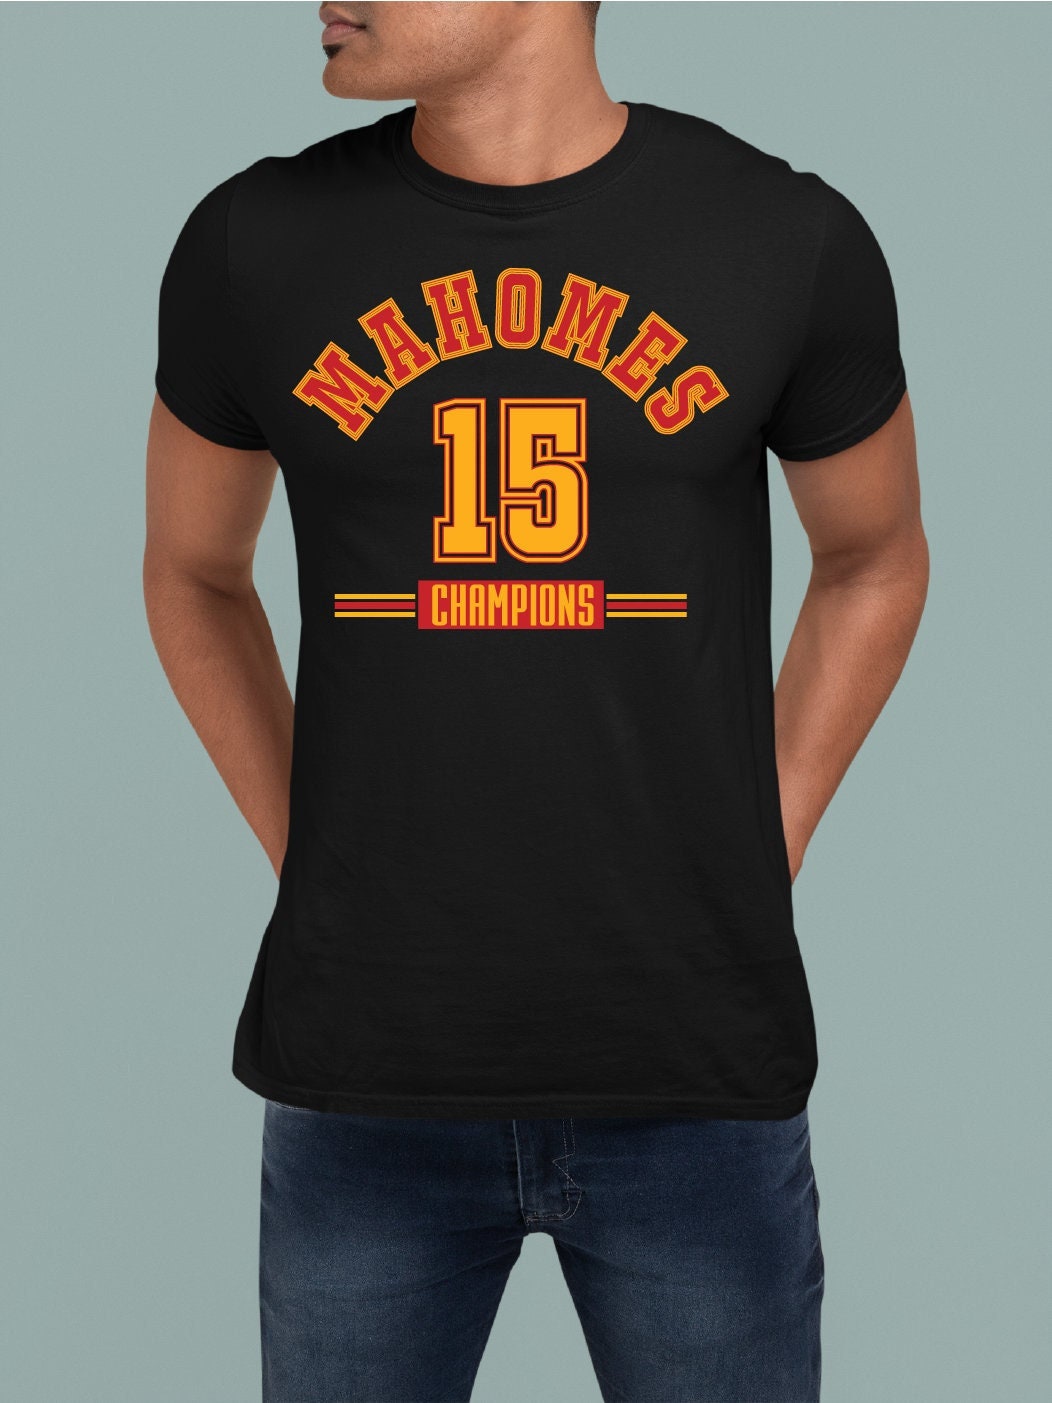 Discover Mahomes Shirt, Patrick Mahomes Shirt,